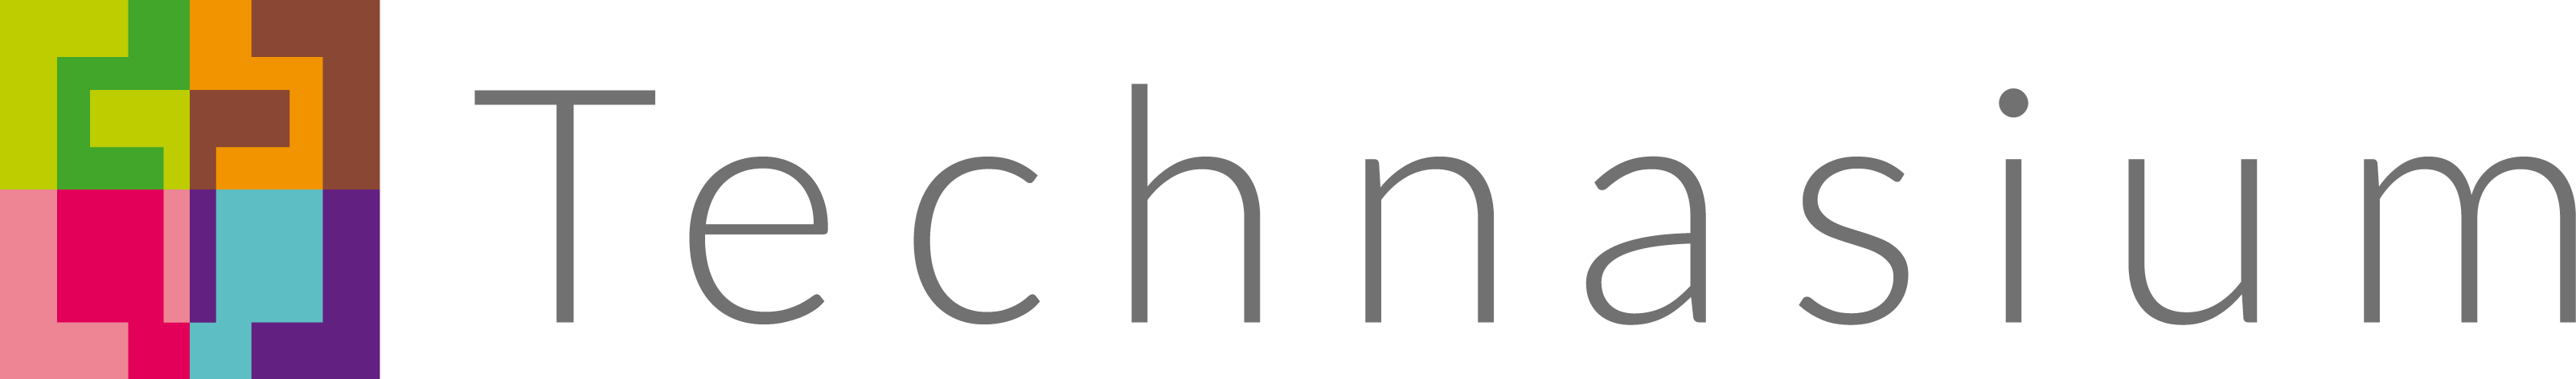 Logo-Technasium-PNG-liggende-variant-voor-website-transparant1